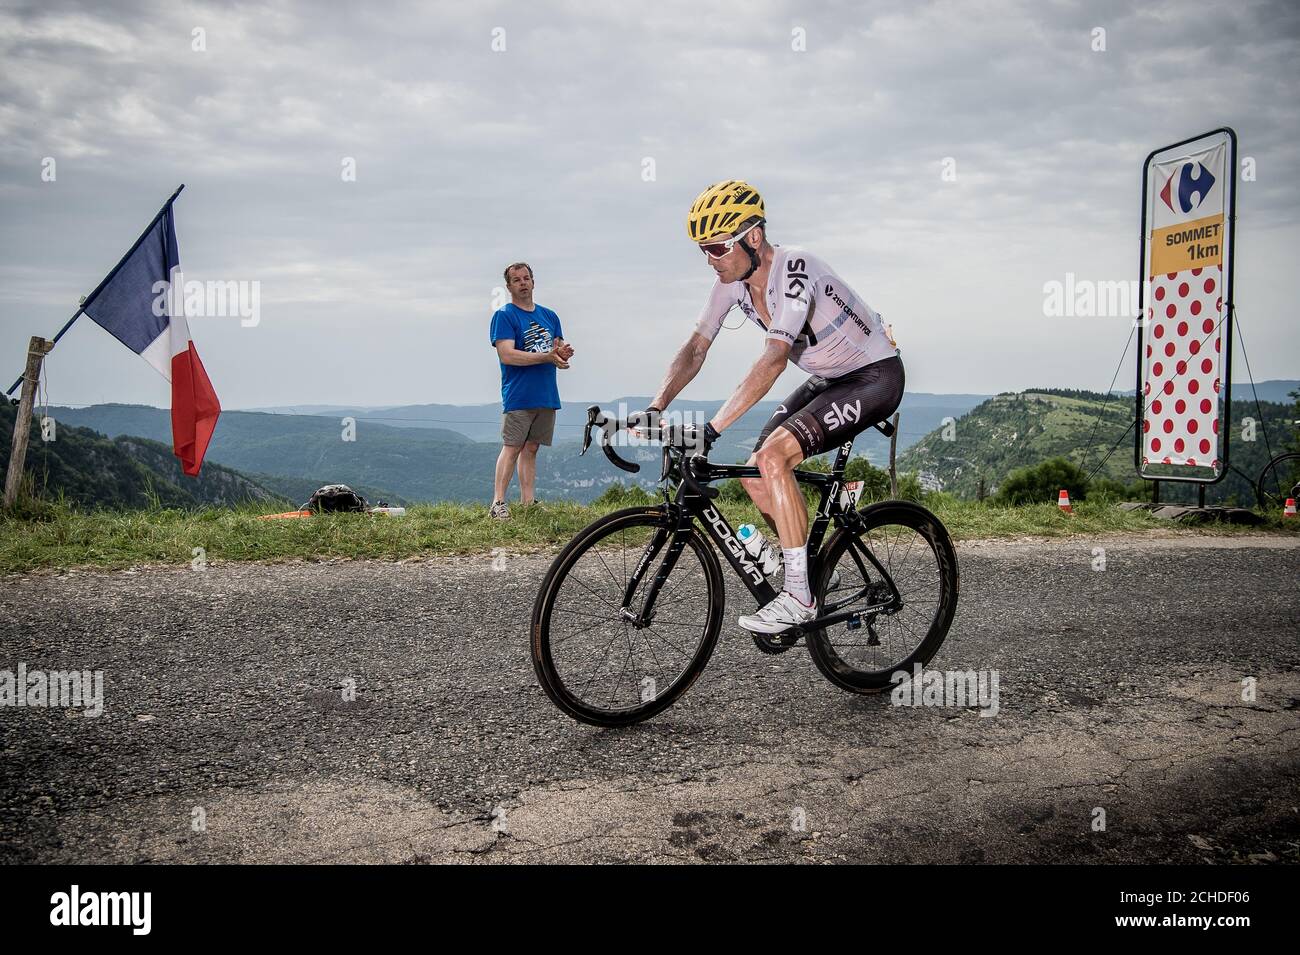 8 luglio 2017, Francia; Ciclismo, Tour de France 8° tappa: 8 luglio 2017, Francia; Ciclismo, Tour de France 8° tappa: Vasil Kiryienka (Blr) Foto Stock